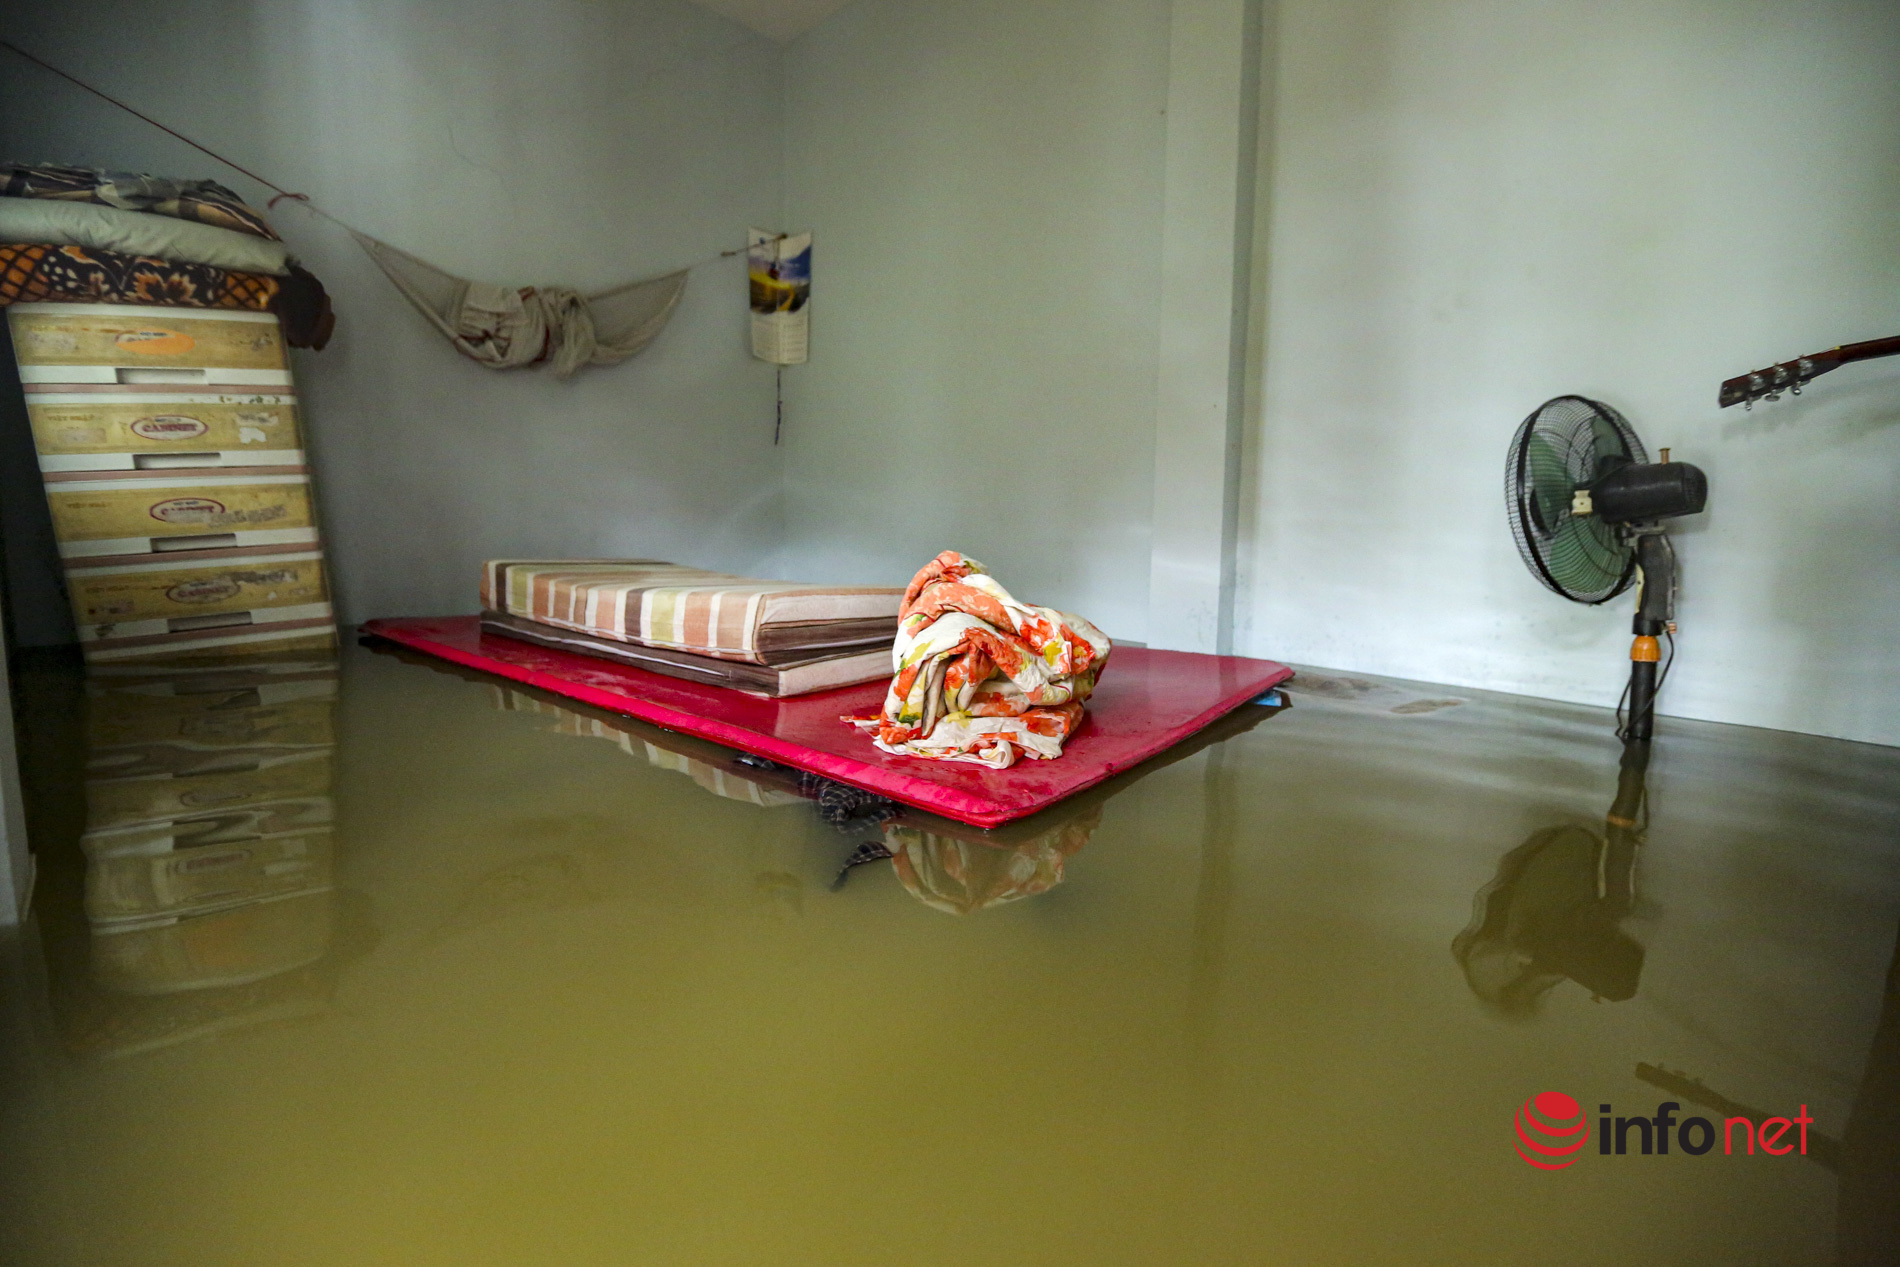 Nước sông lên cao, hàng chục hộ dân ở ngoại ô Hà Nội hối hả 'chạy lụt'